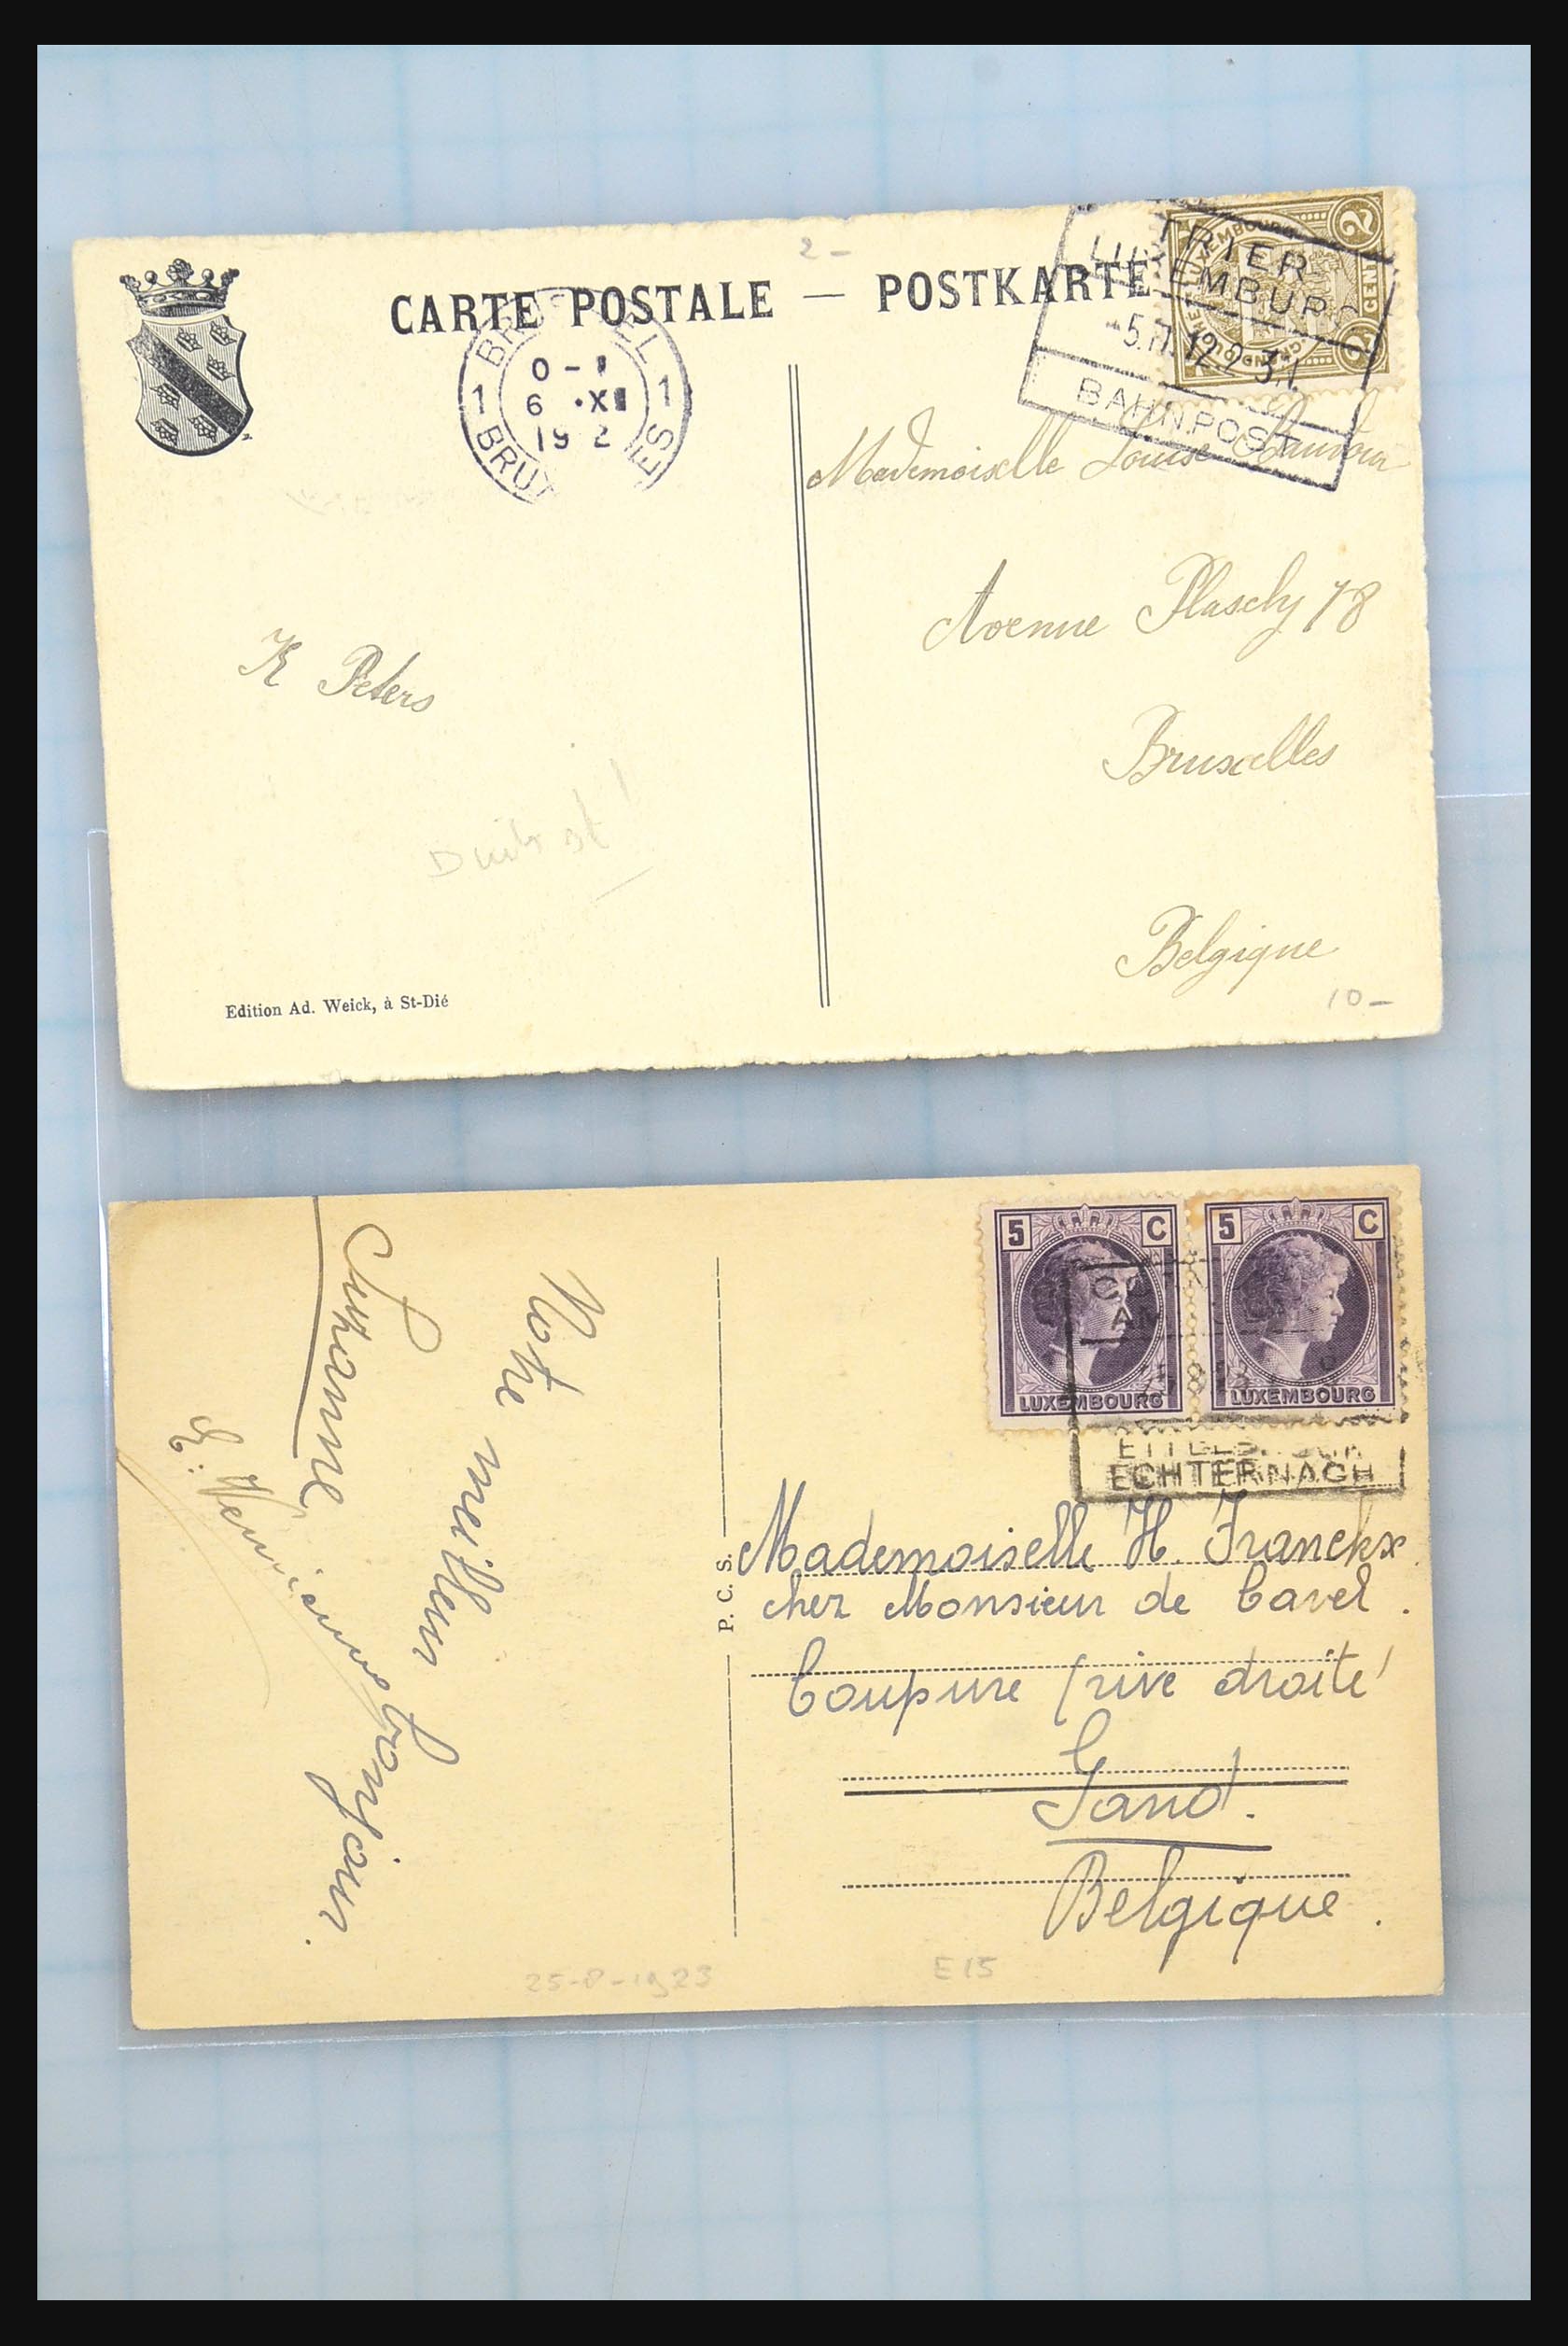 31358 105 - 31358 Portugal/Luxemburg/Griekenland brieven 1880-1960.